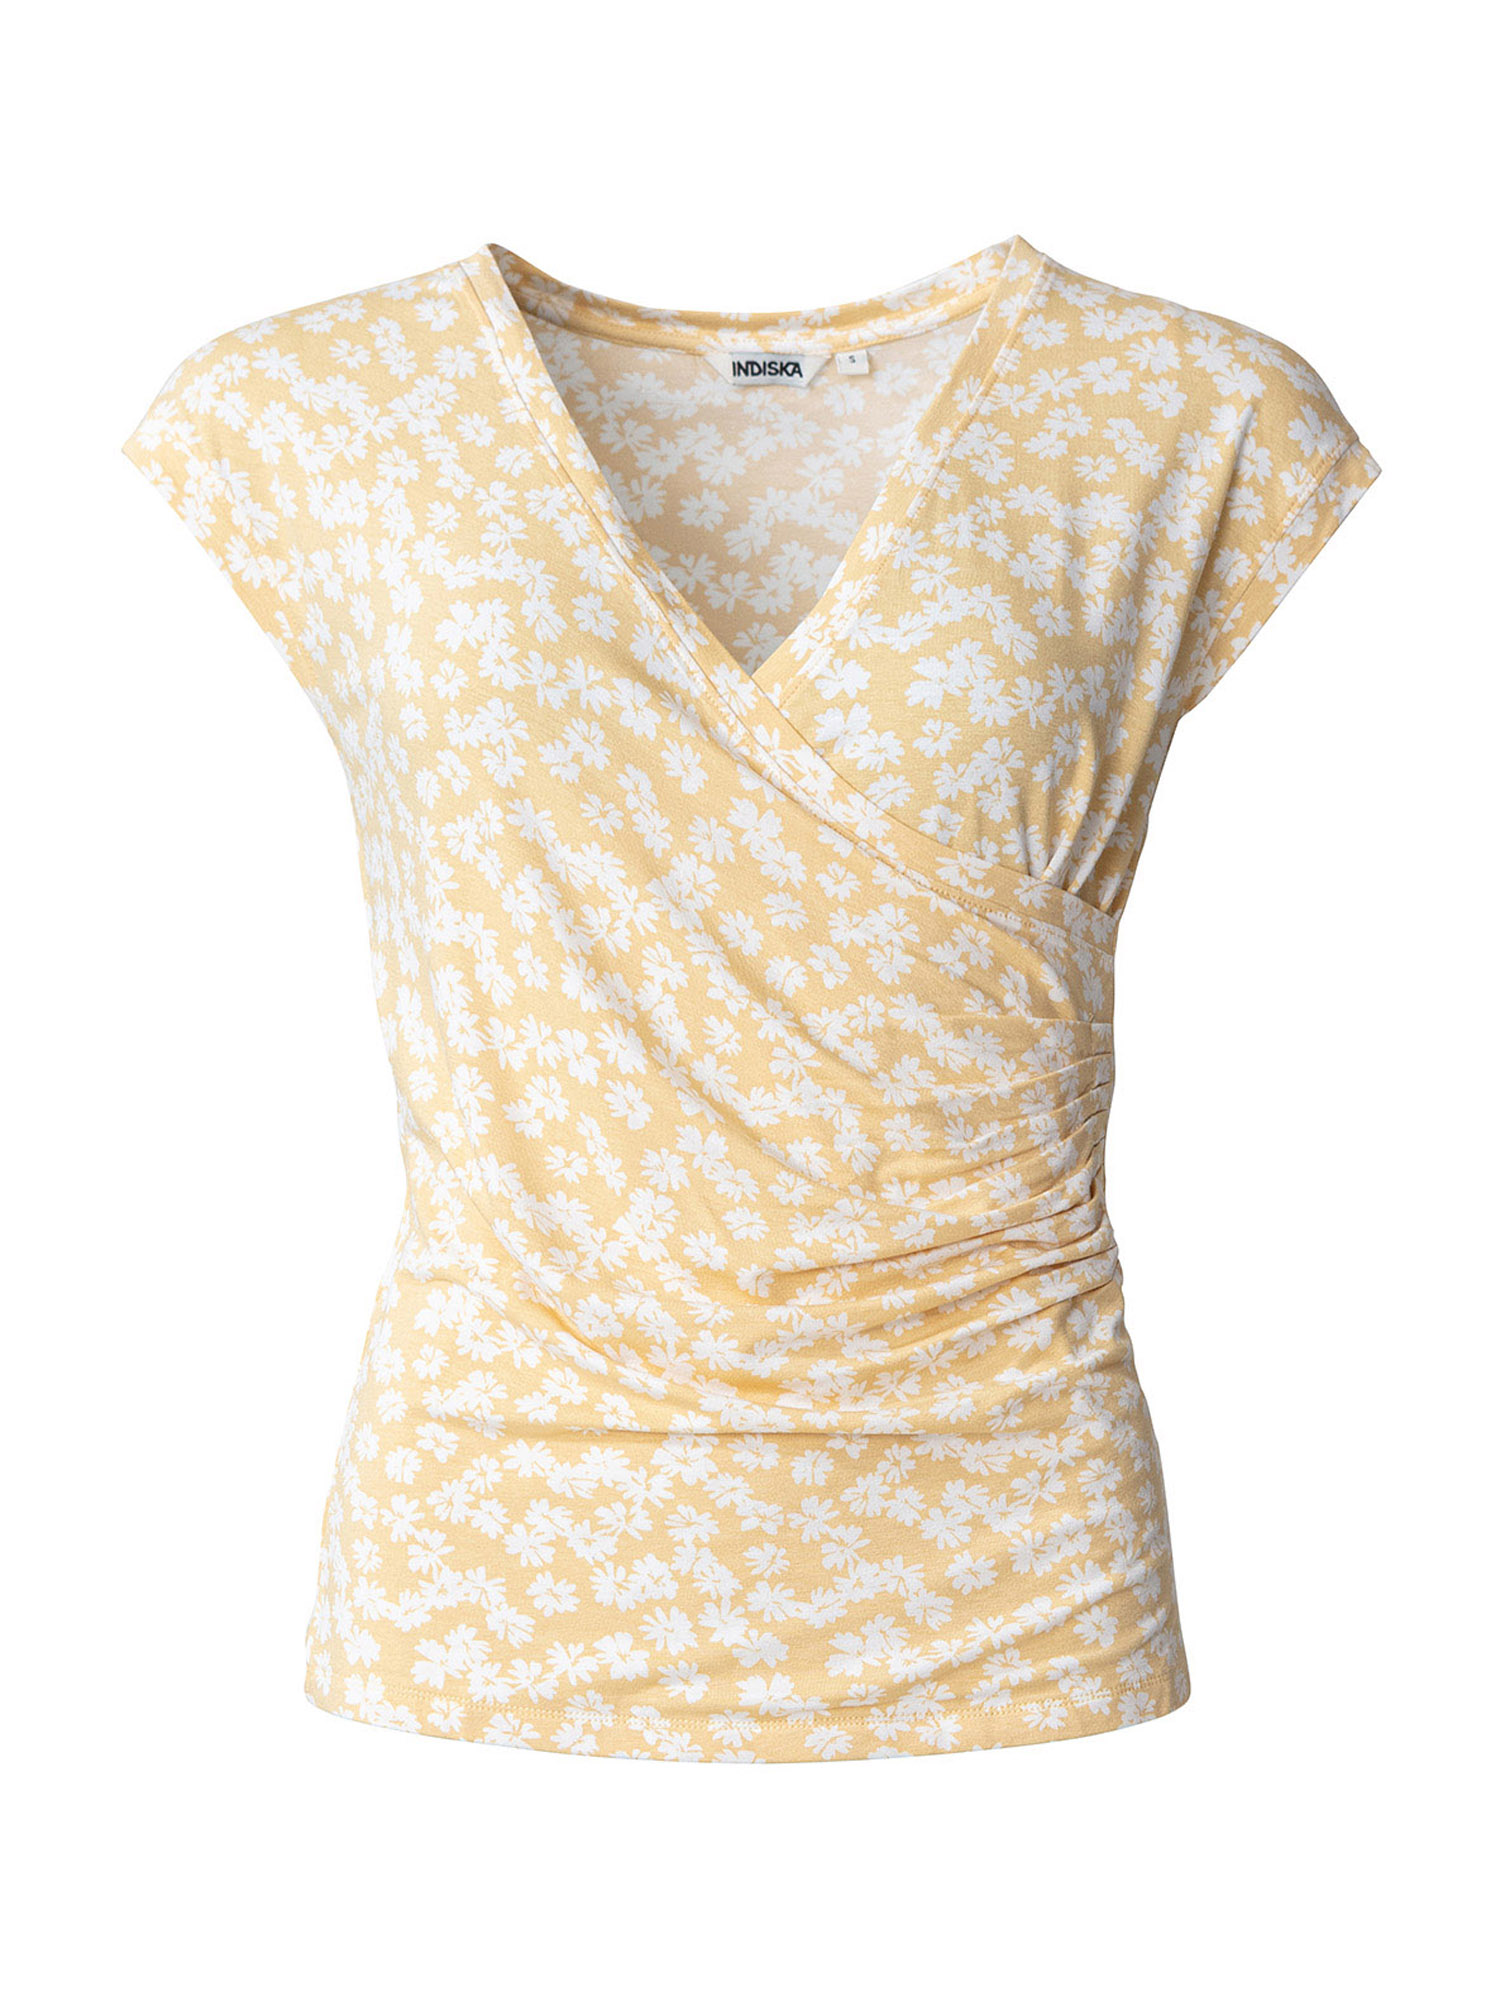 C0033 Odzież Indiska Koszulka Tawny w kolorze Żółtym 